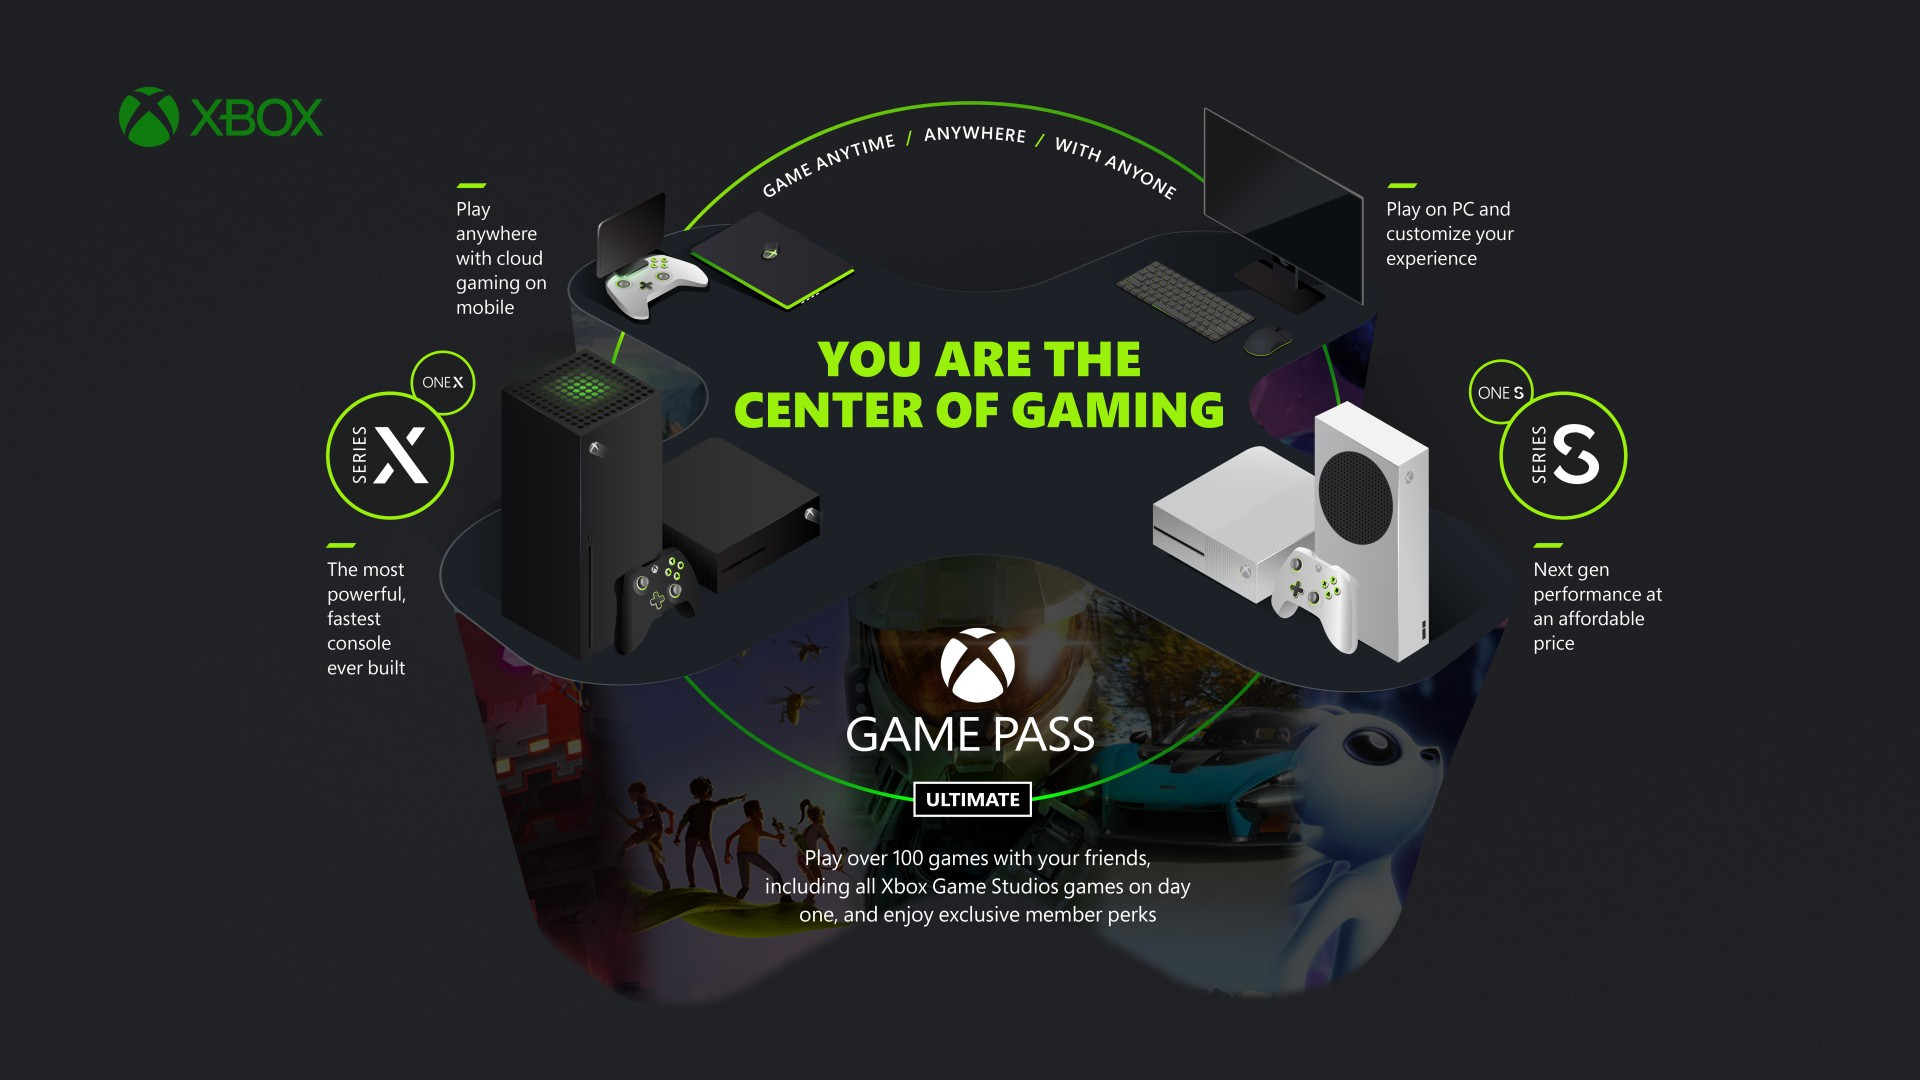 ایکس باکس گیم پس آلتیمیت / Xbox Game Pass Ultimate